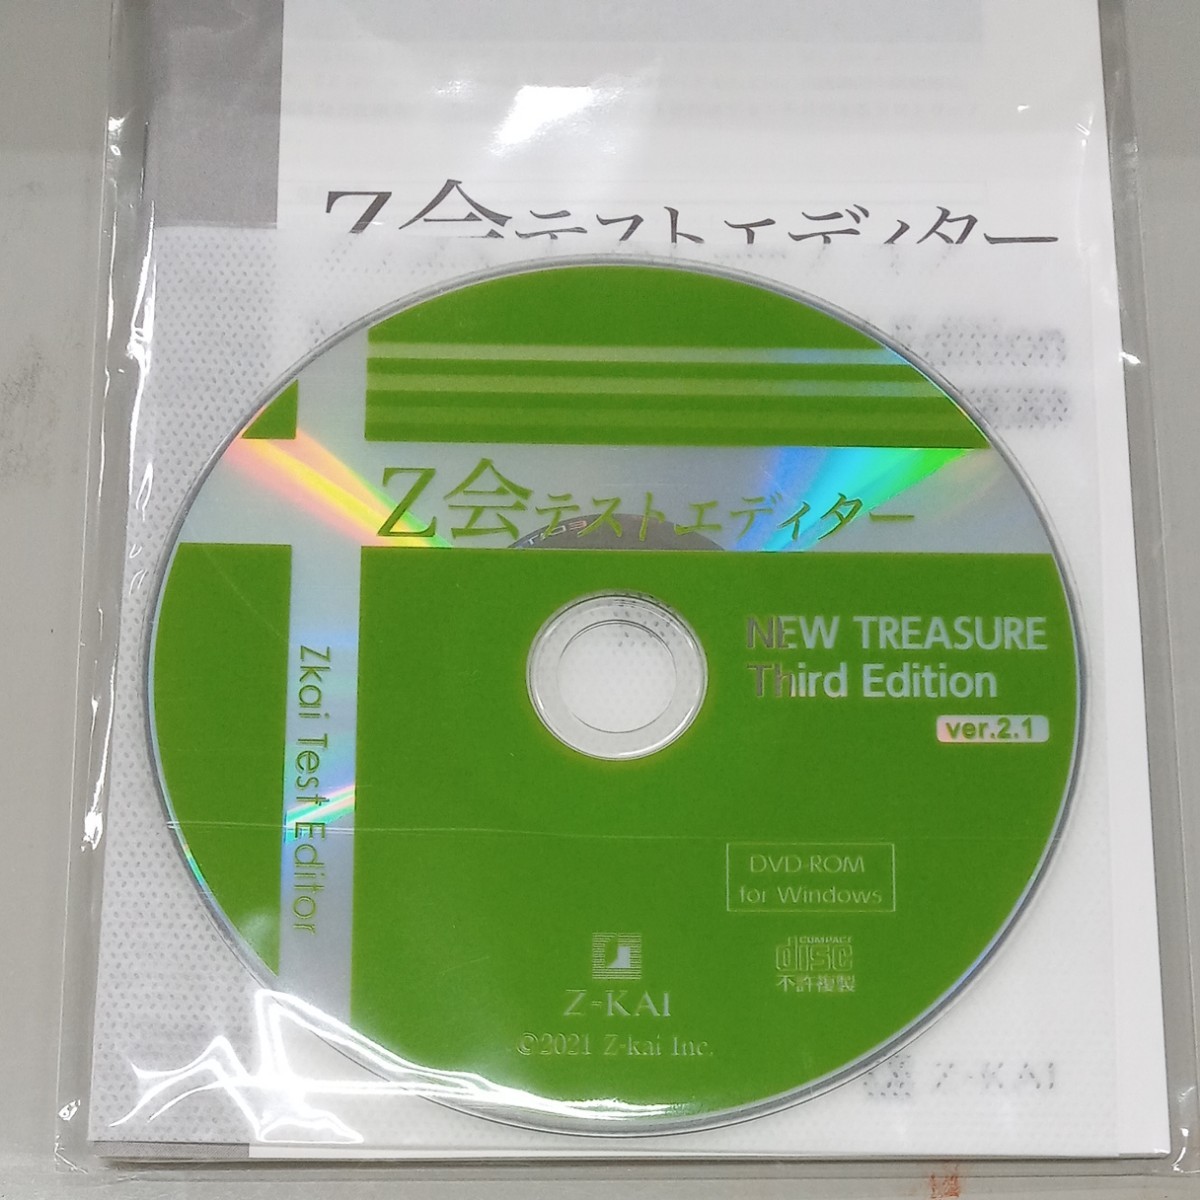 Ｚ会　テストエディター　NEW TREASURE Third Edition ver.2.1